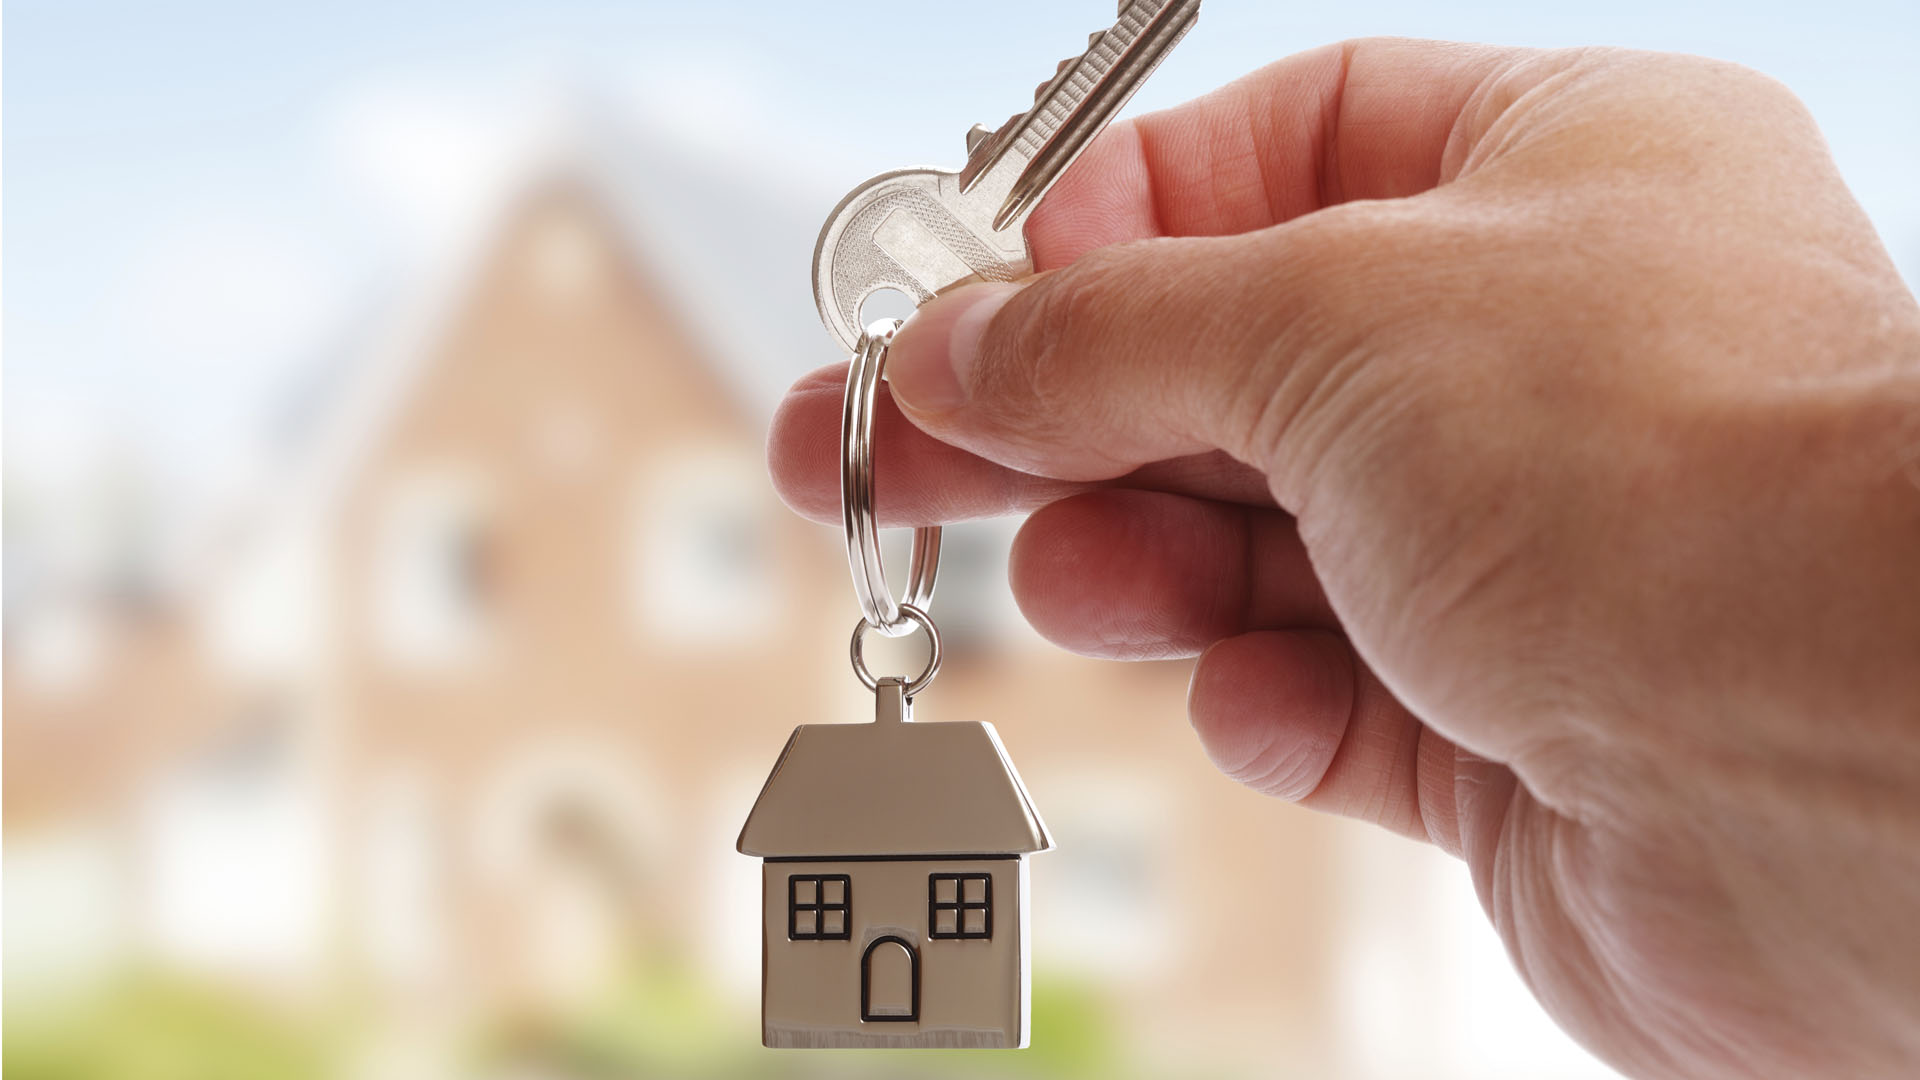 Los ciudadanos aprovecharon las bajas tasas de interés en los créditos para adquirir viviendas